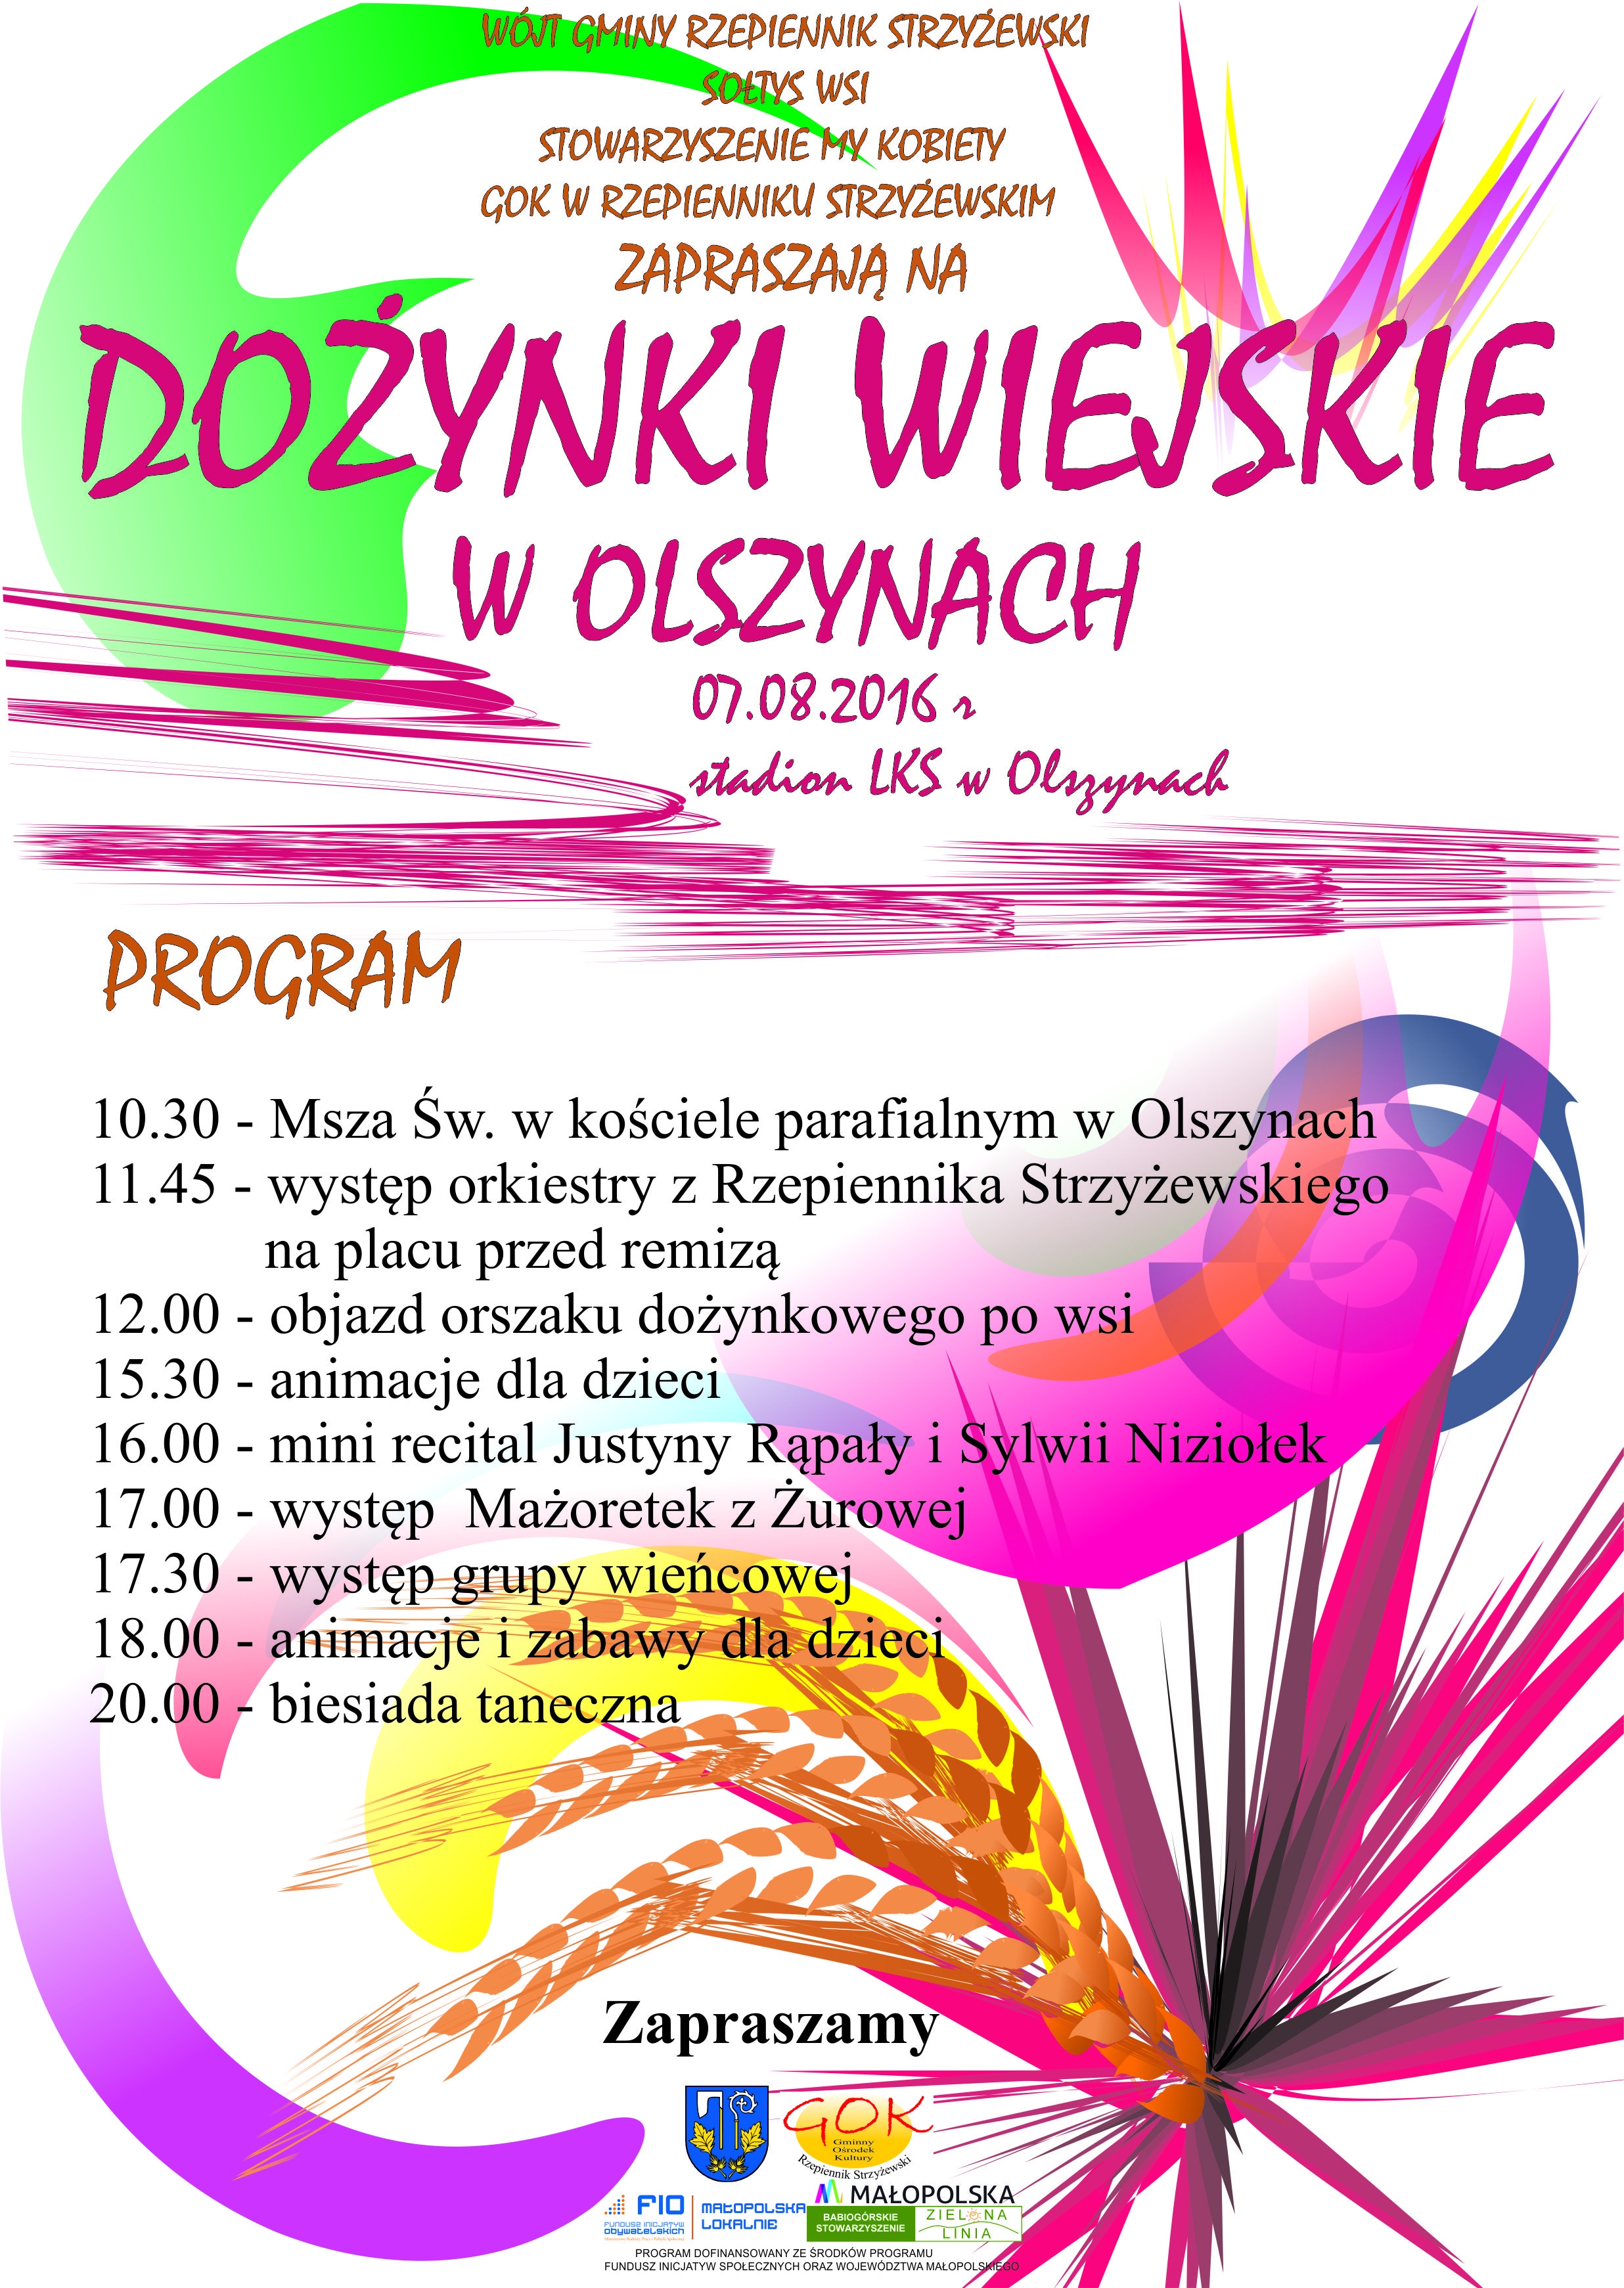 Dożynki Wiejskie w Olszynach w najbliższą niedzielę